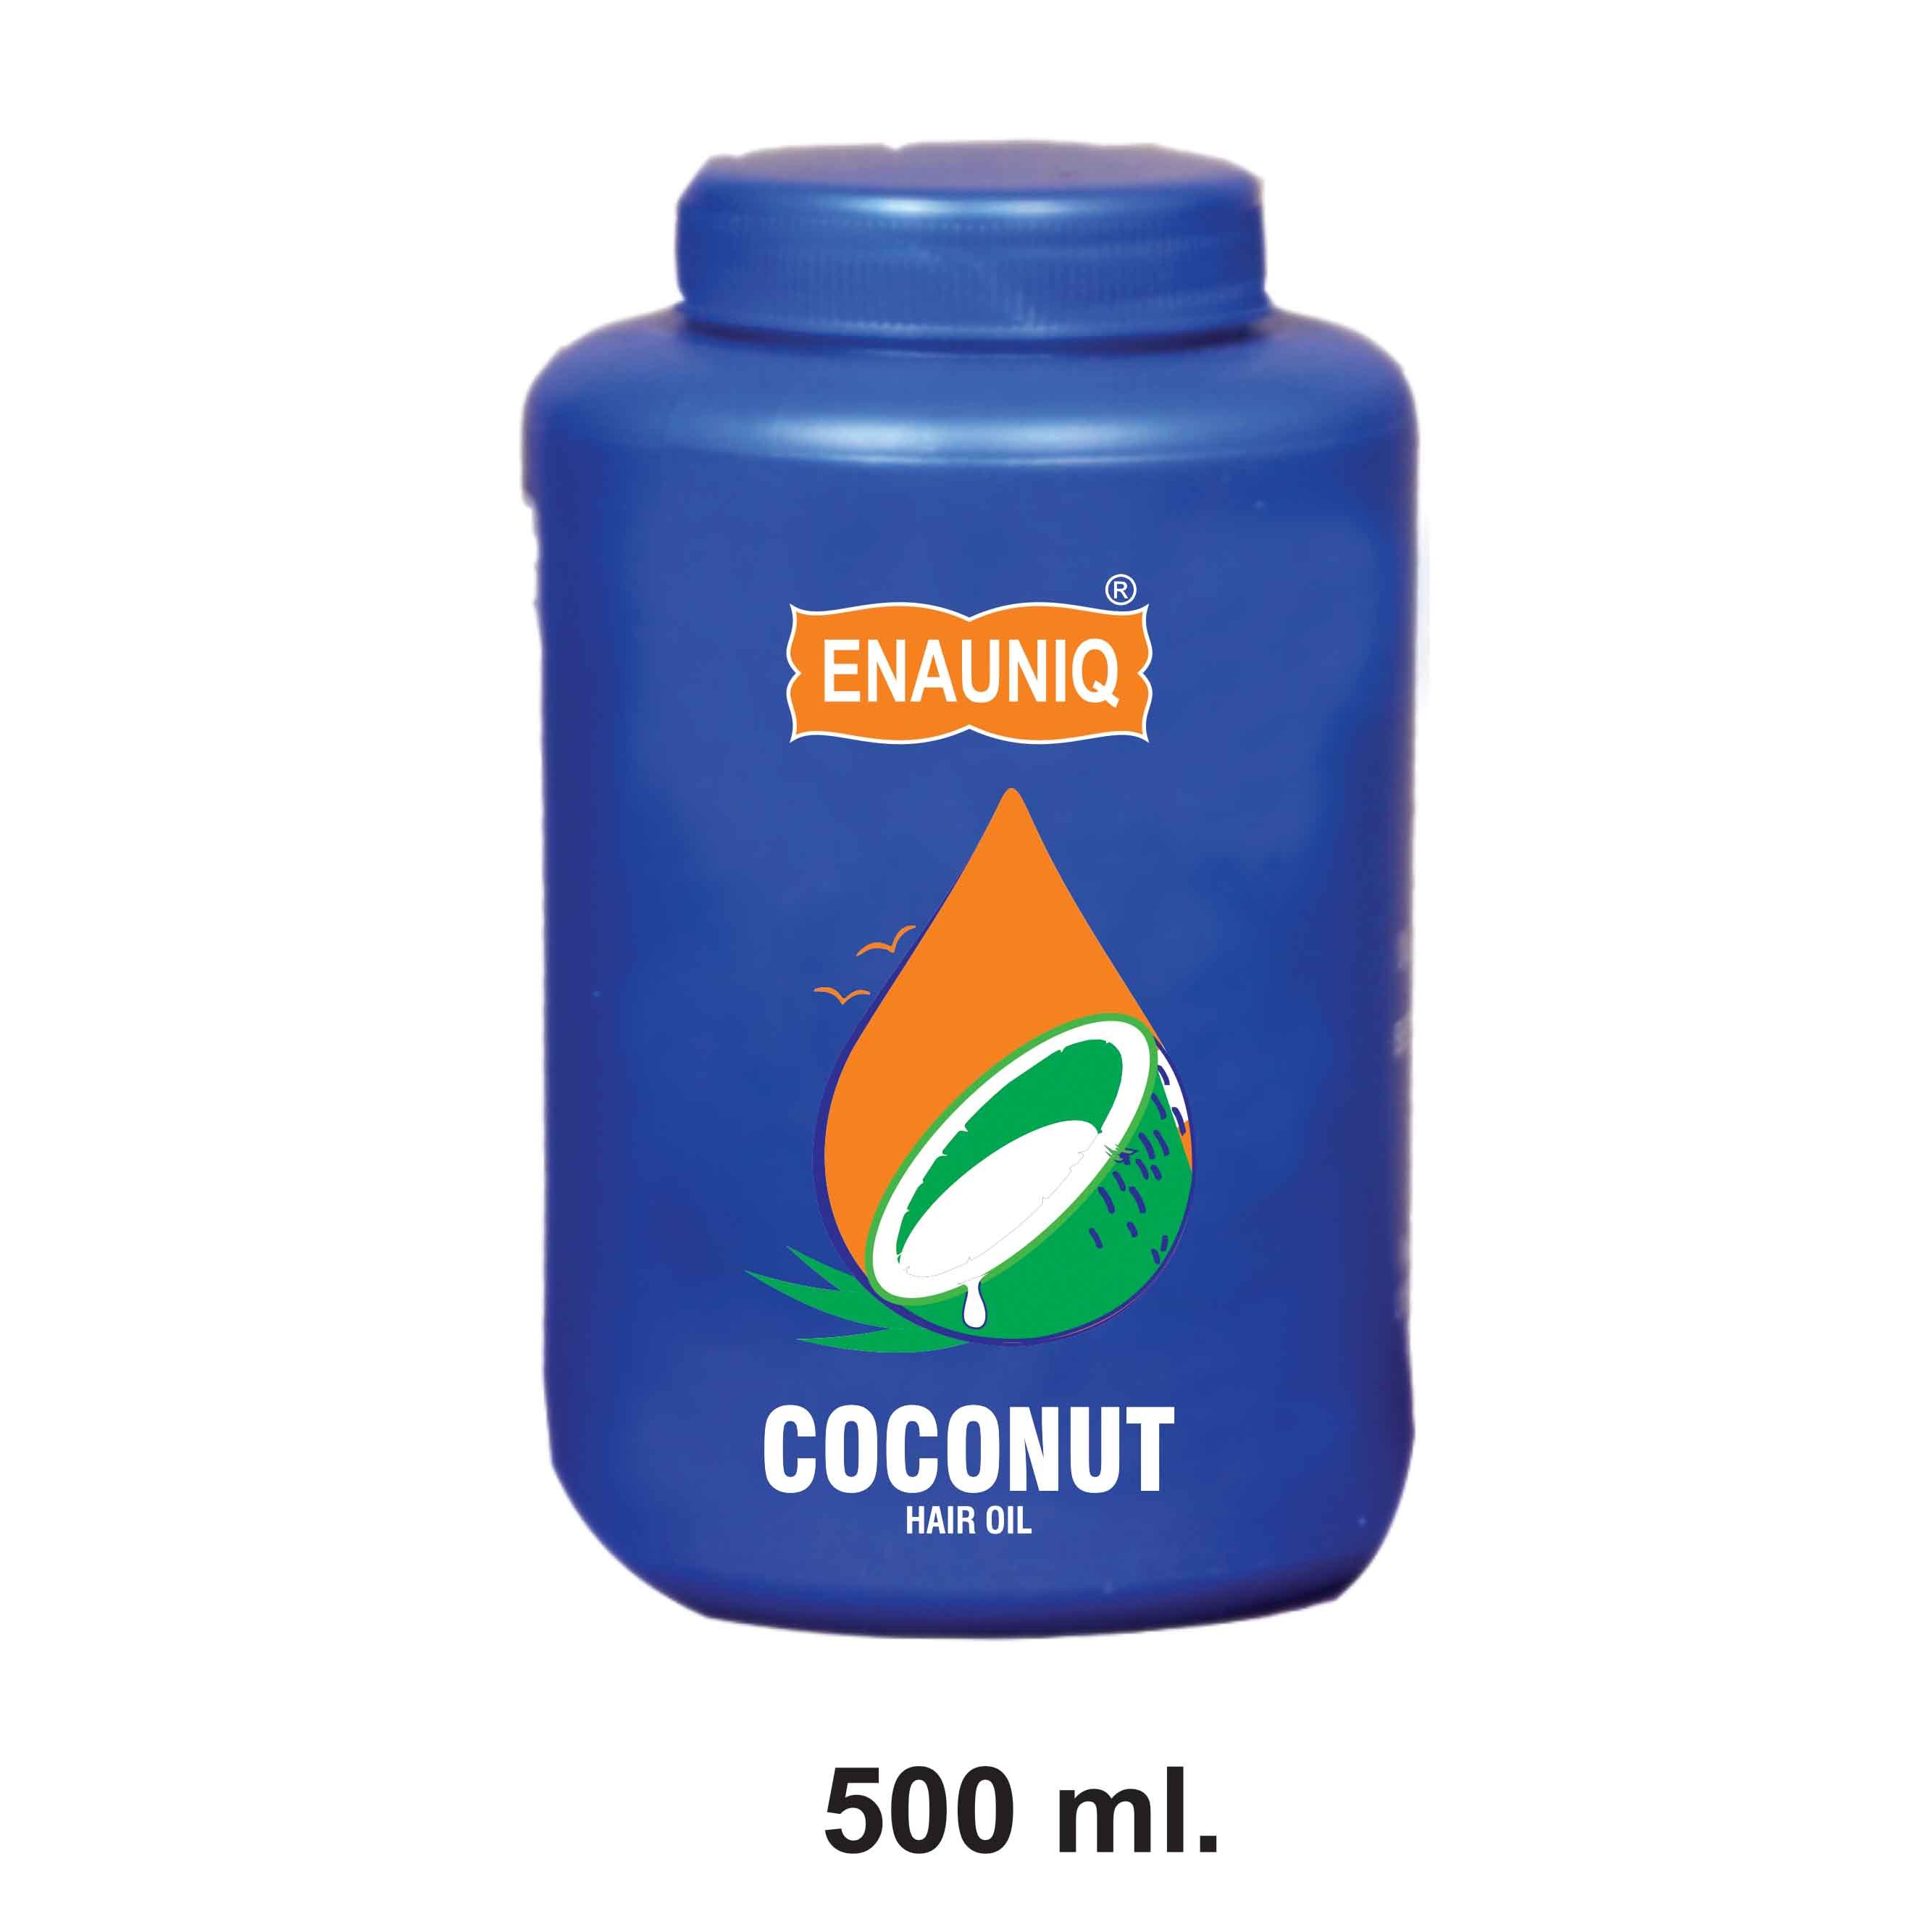 ENAUNIQ COCONUT HAIR OIL